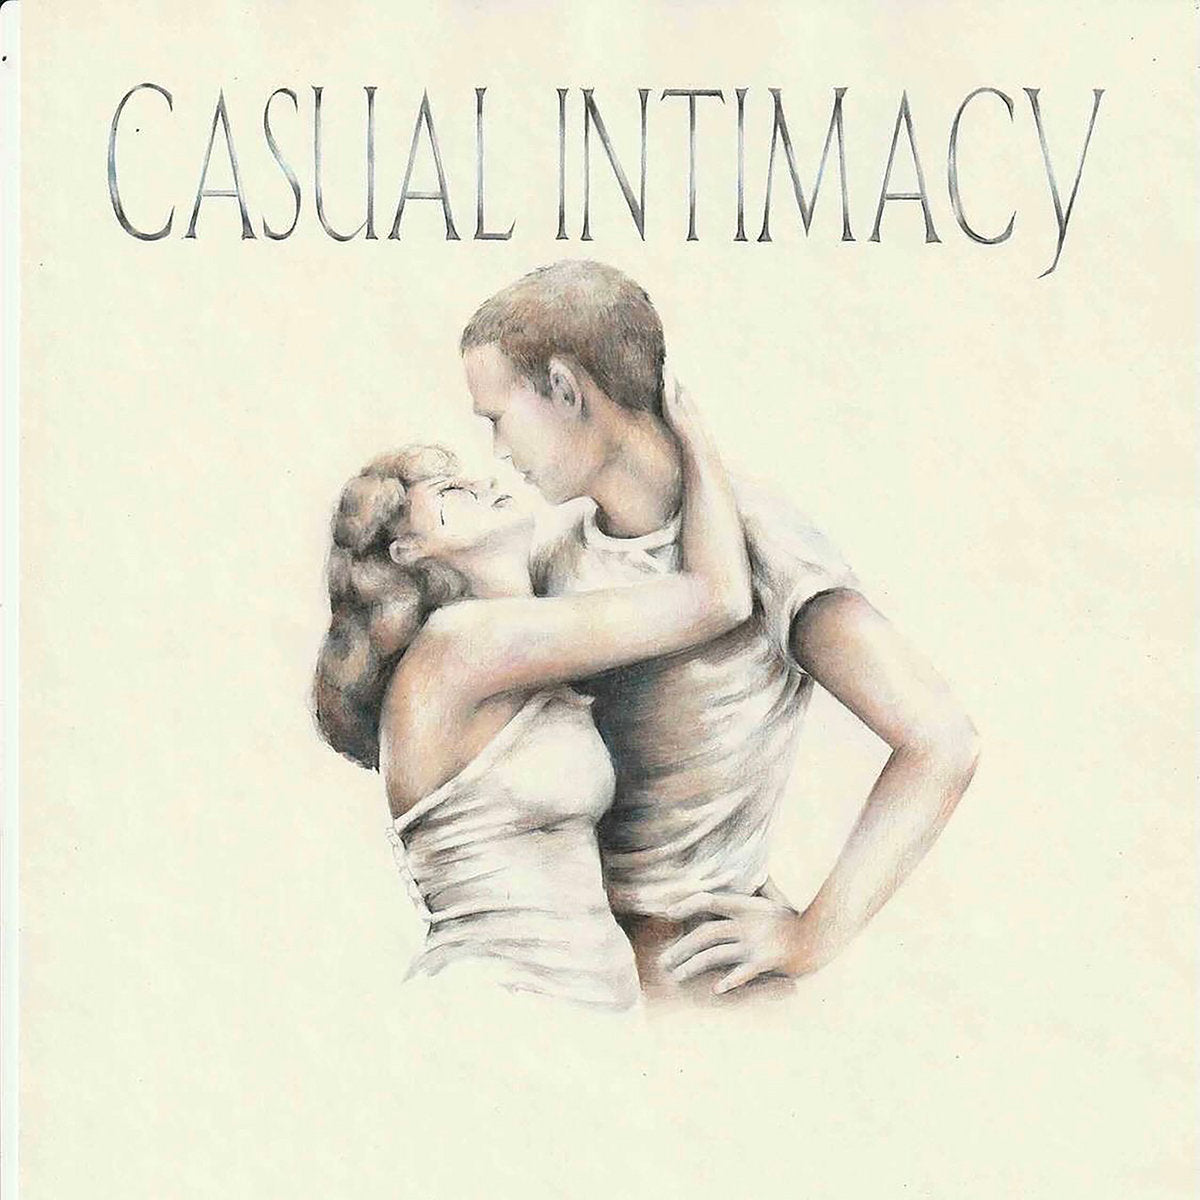 FANTASY CAMP - CASUAL INTIMACY Vinyl LP